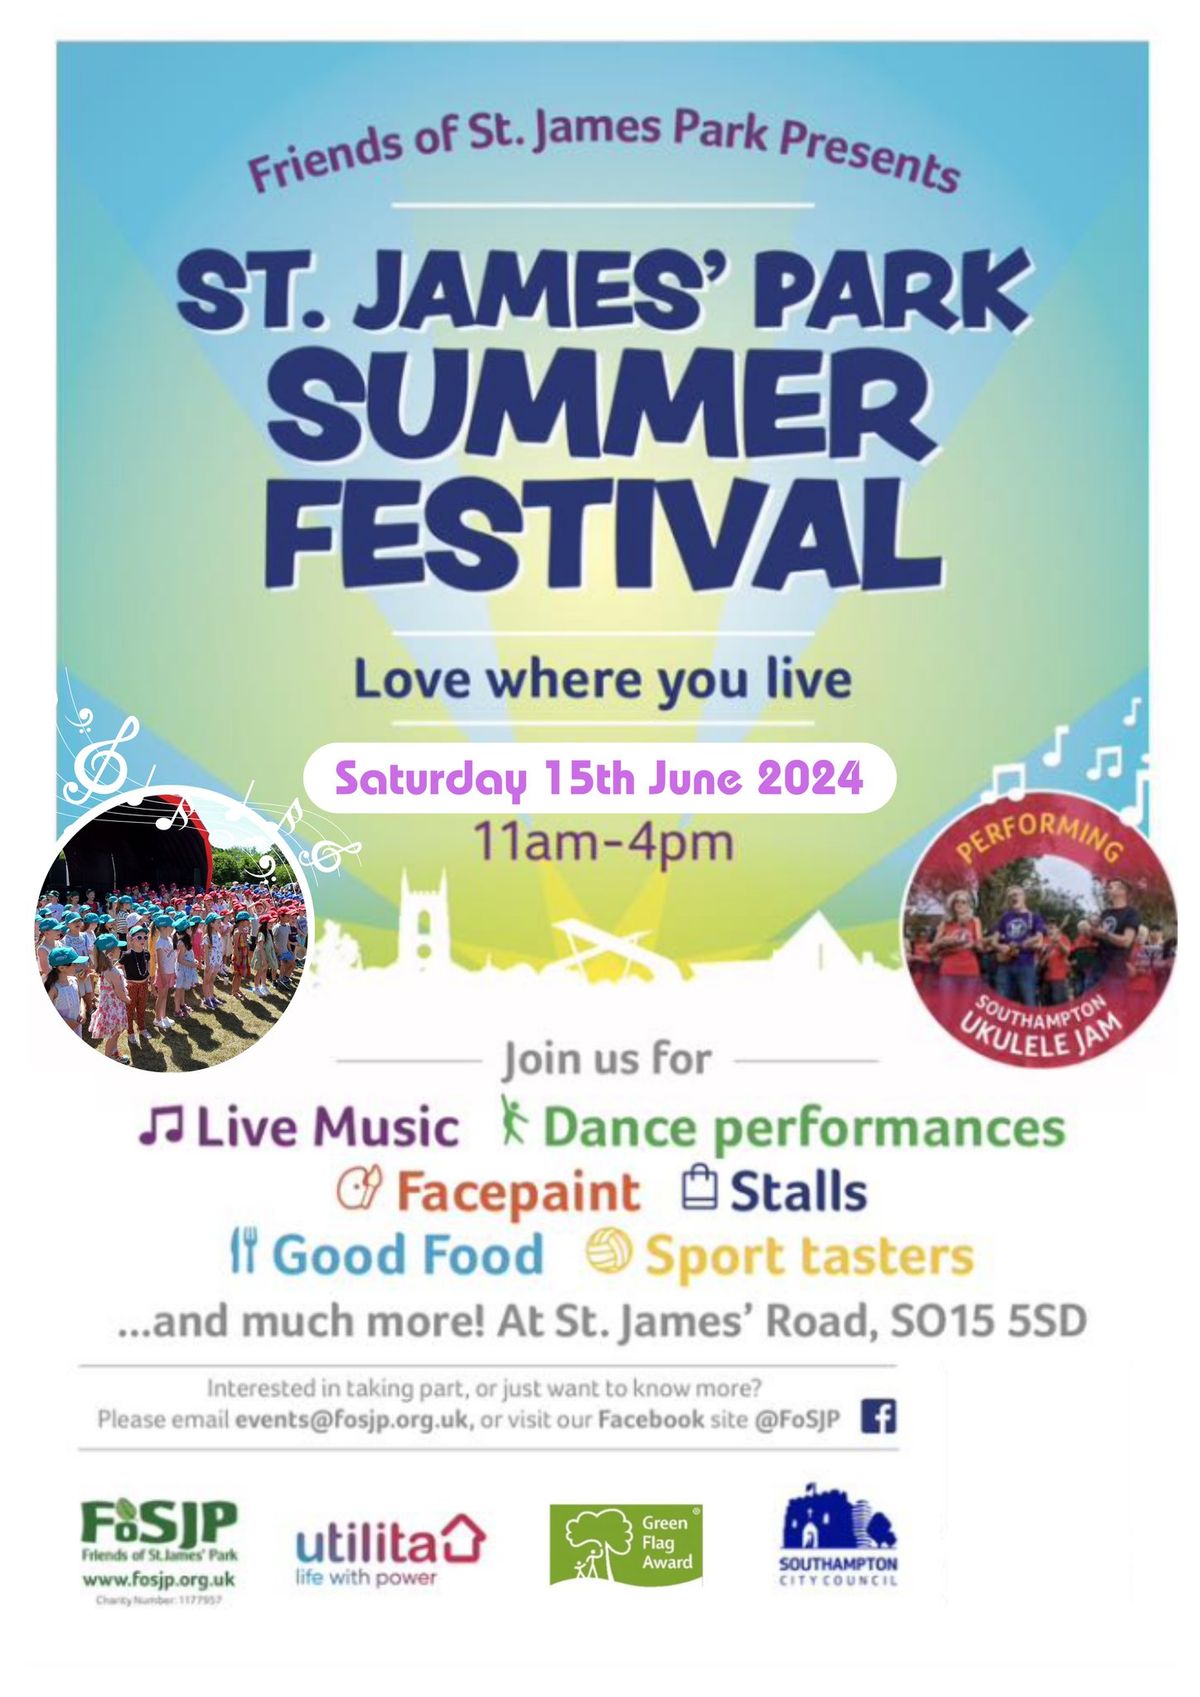 St. James' Park Summer Festival 2024